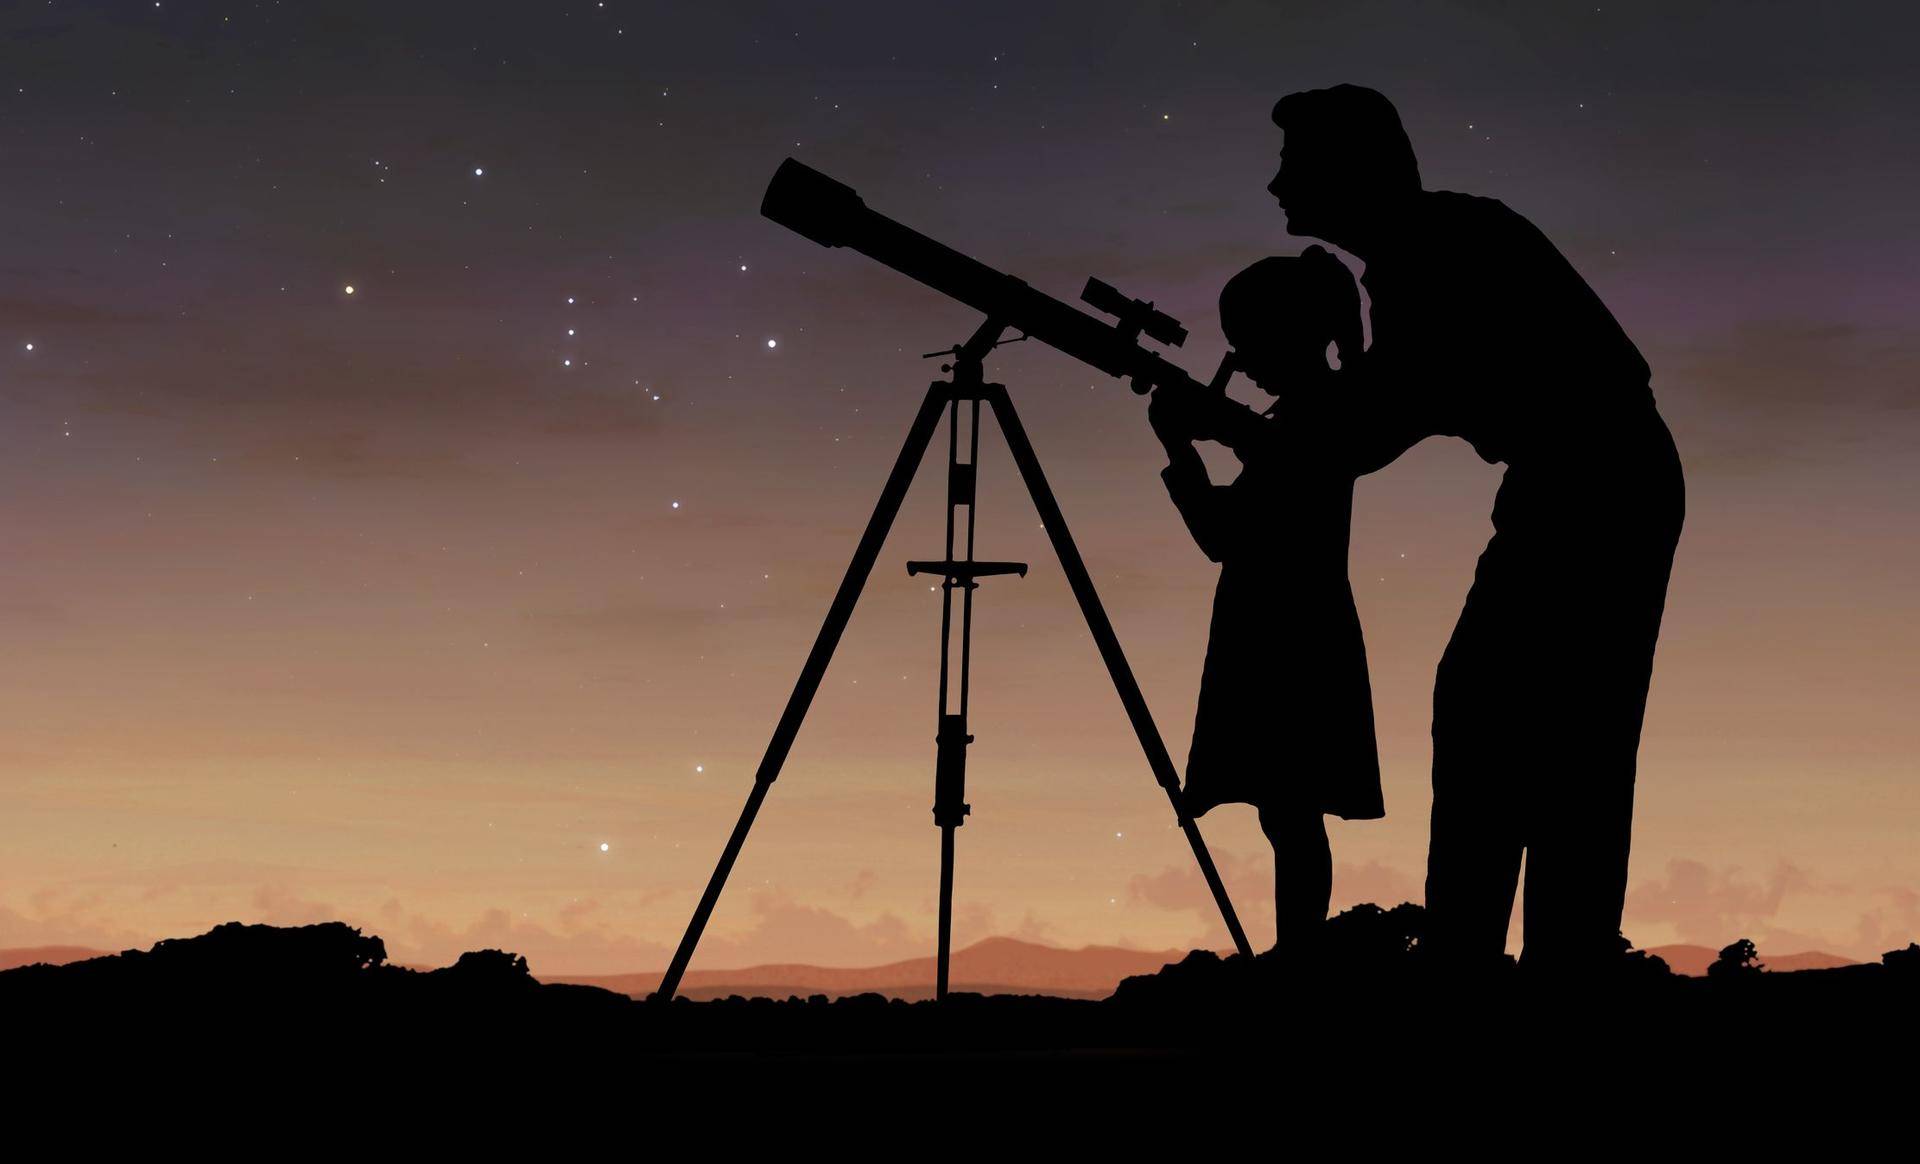 望远镜有哪些种类?该怎么根据自身要求选择望远镜?看完恍然大悟